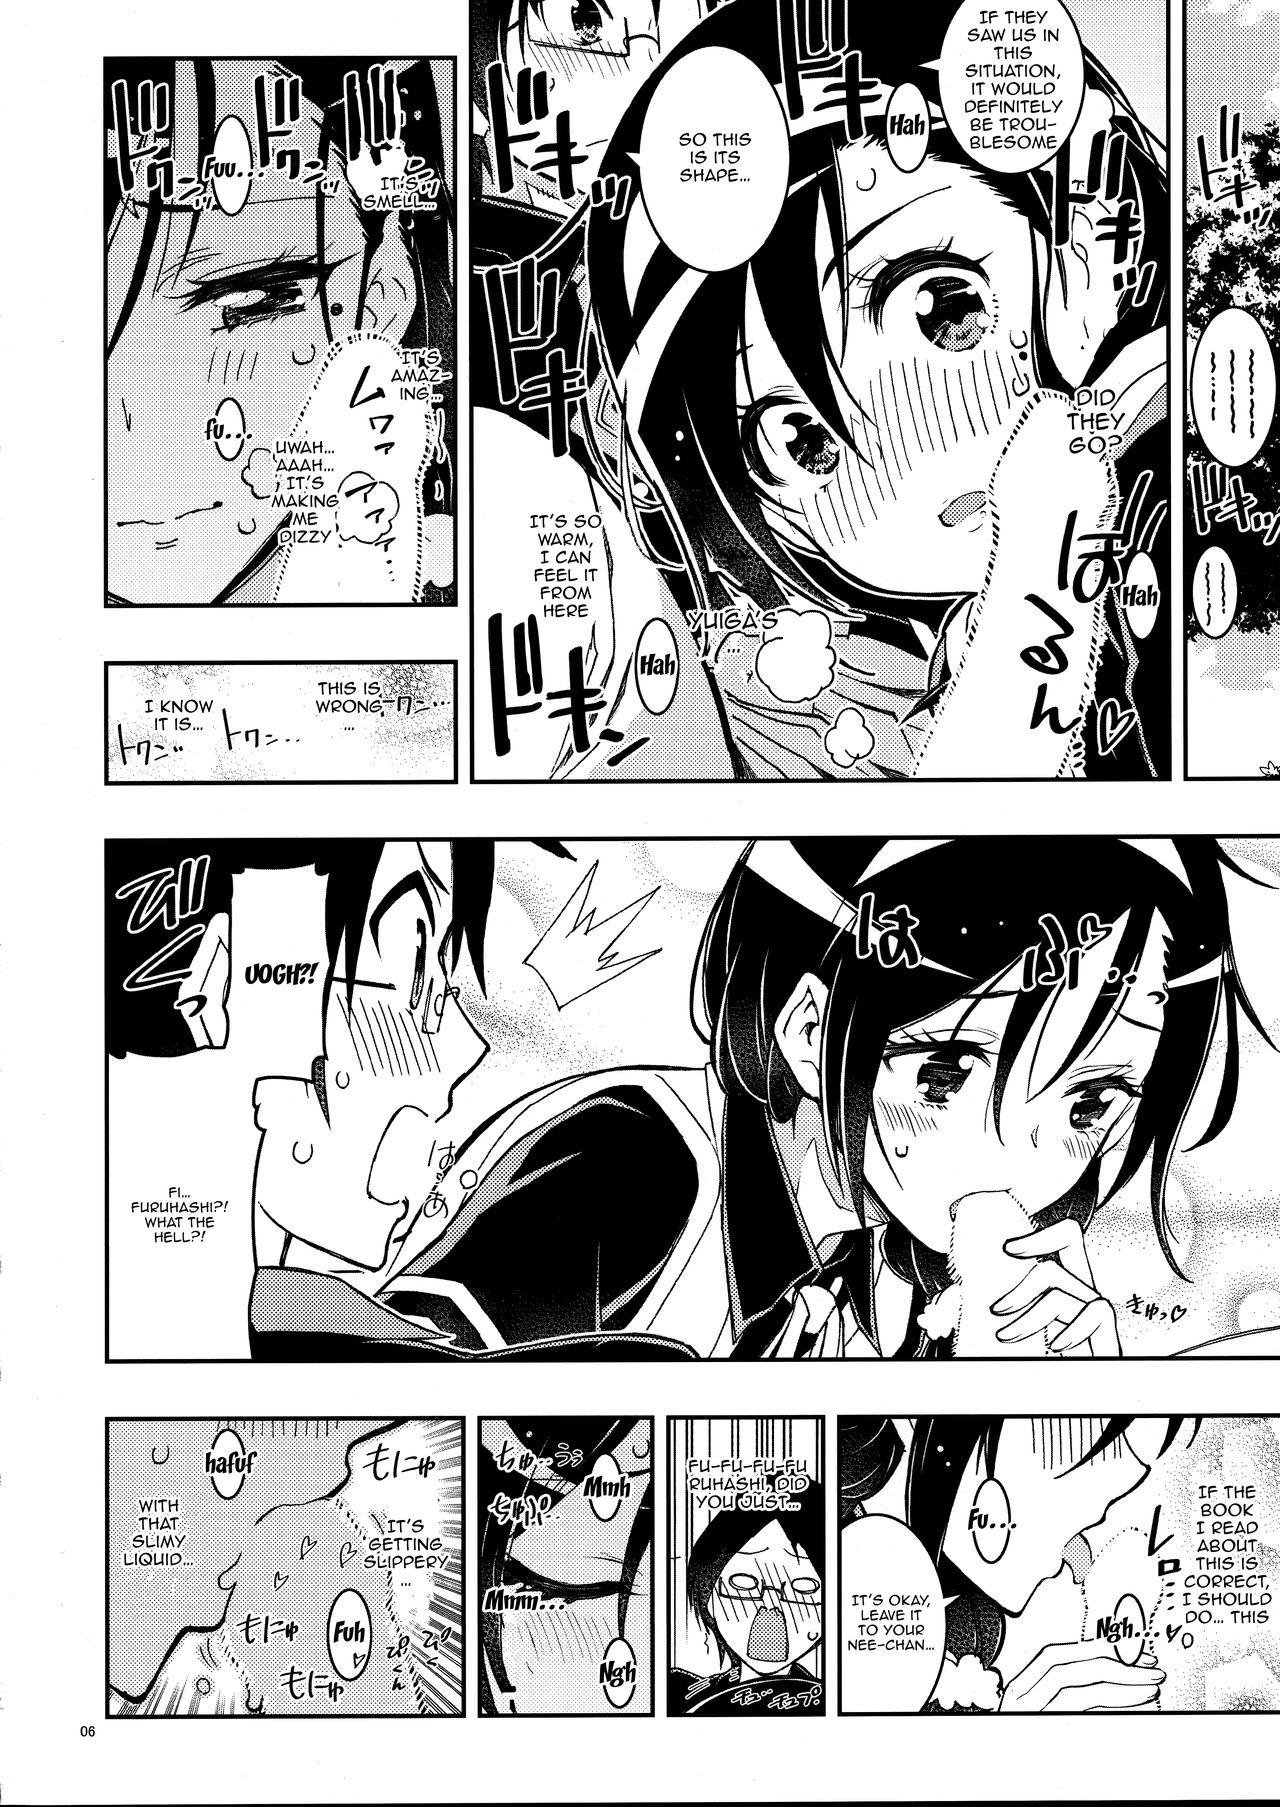 3some BOKUTACHIHA FUMINOMO ASUMIMO KAWAII | Fumino and Asumi are so Cute - Bokutachi wa benkyou ga dekinai Cavalgando - Page 5